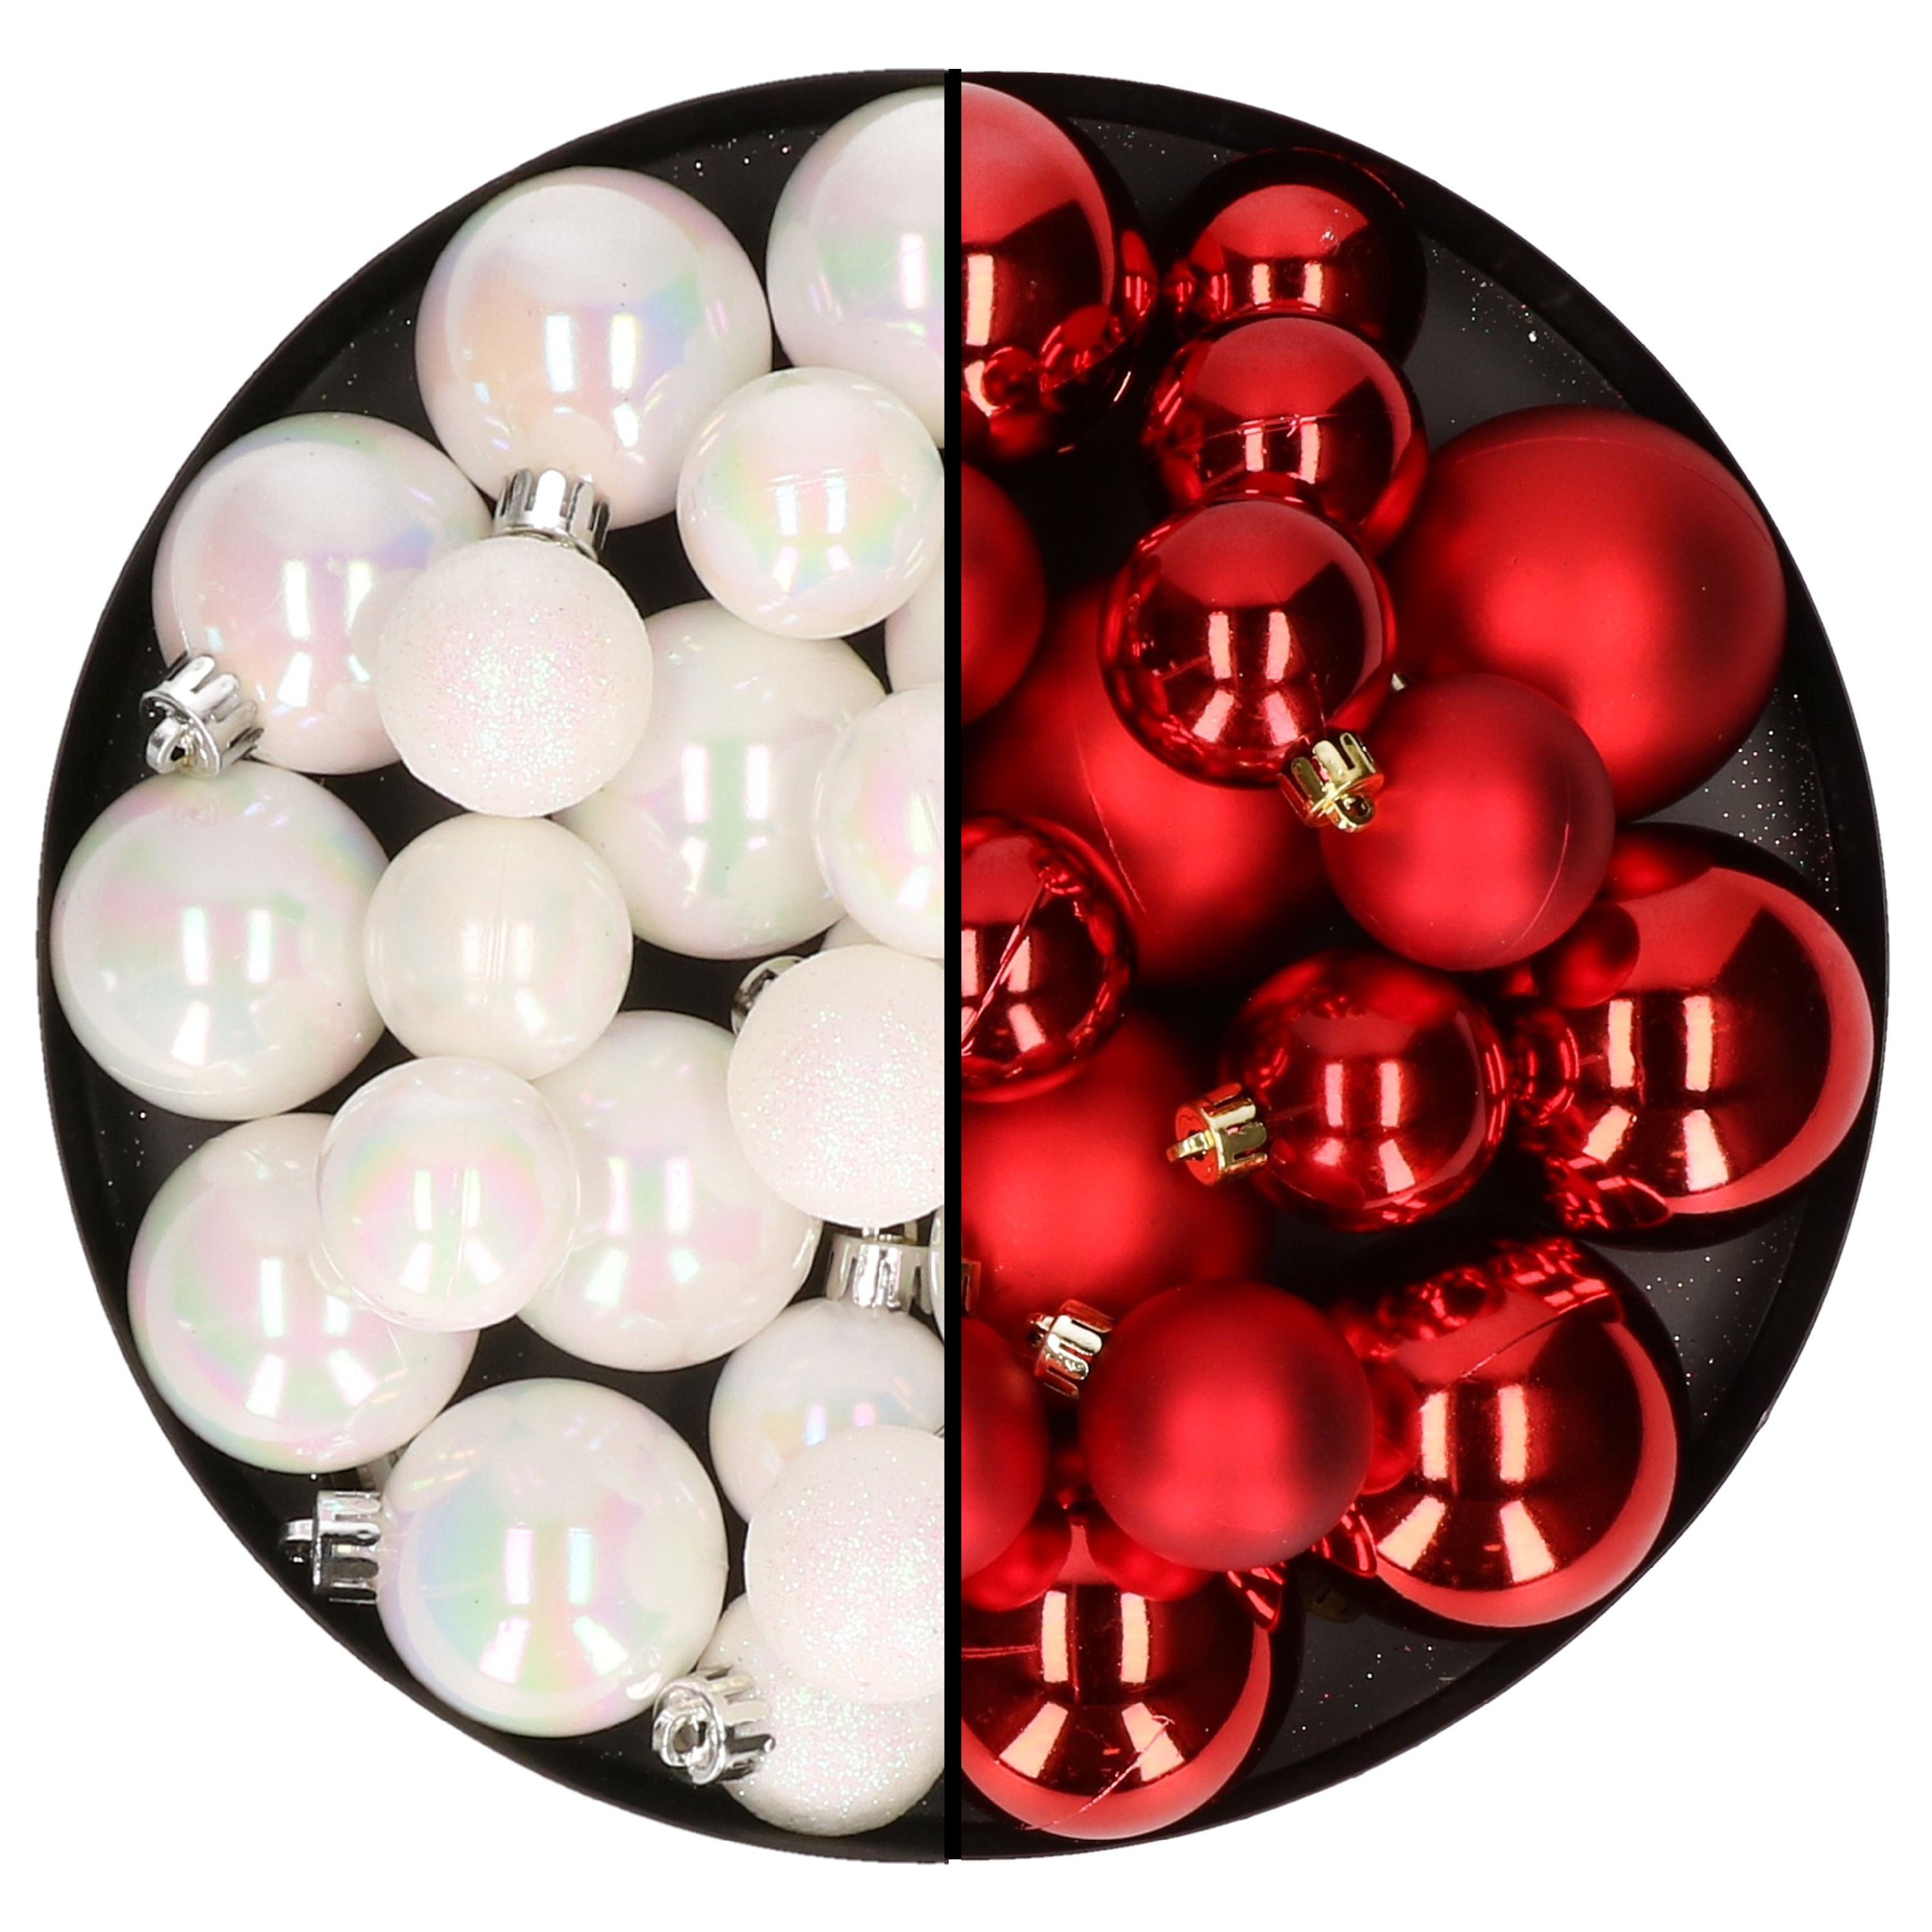 Kerstversiering kunststof kerstballen mix rood-parelmoer wit 4-6-8 cm pakket van 68x stuks